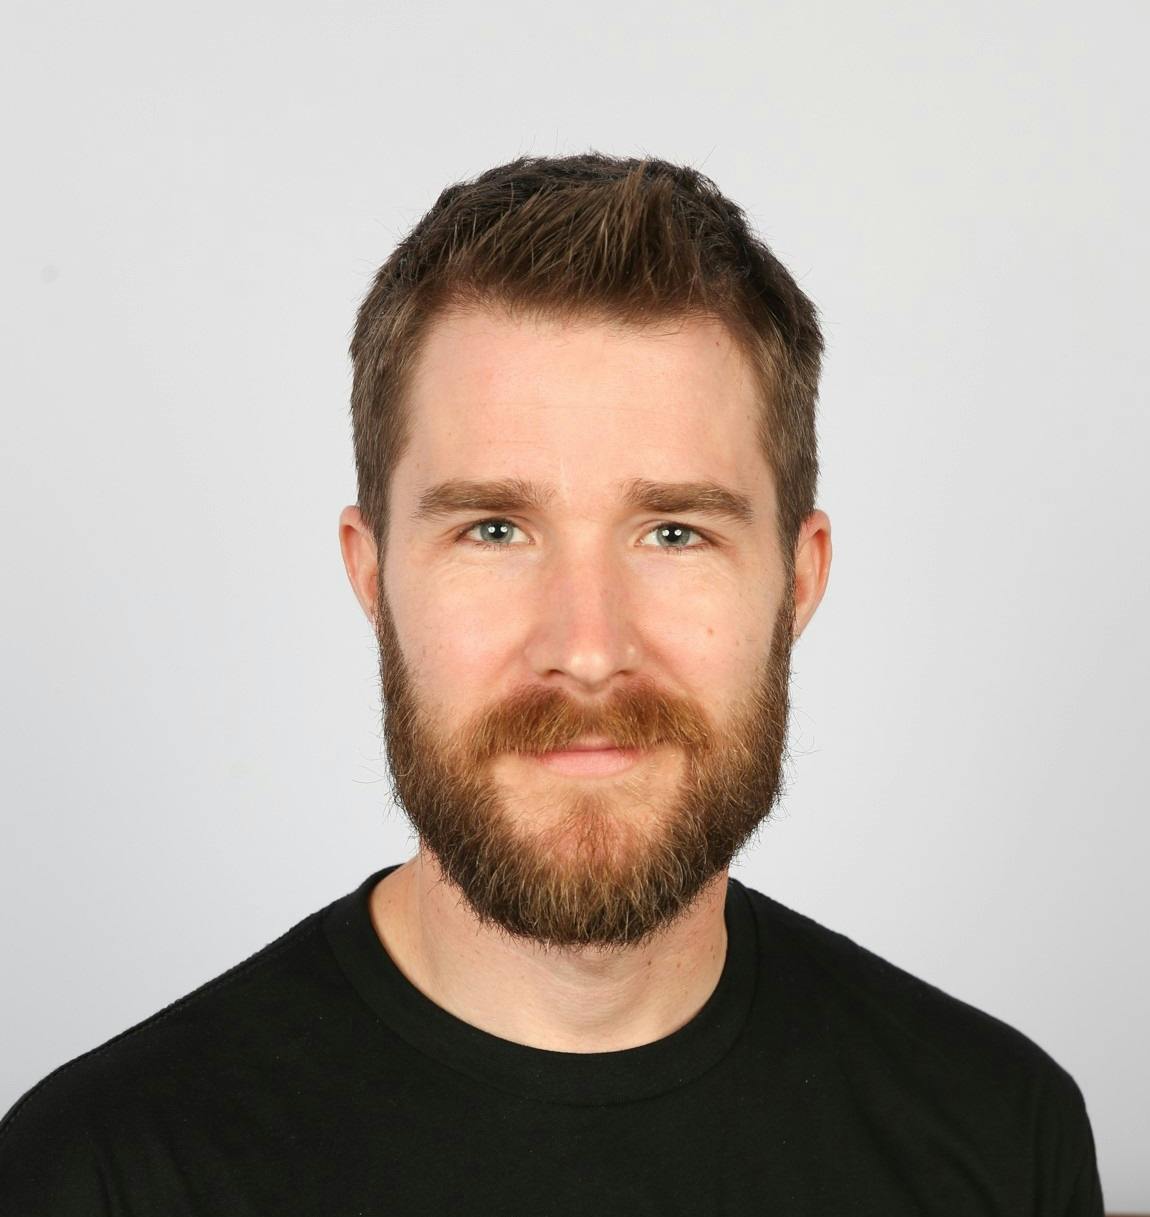 Team member, Tim O'Brien